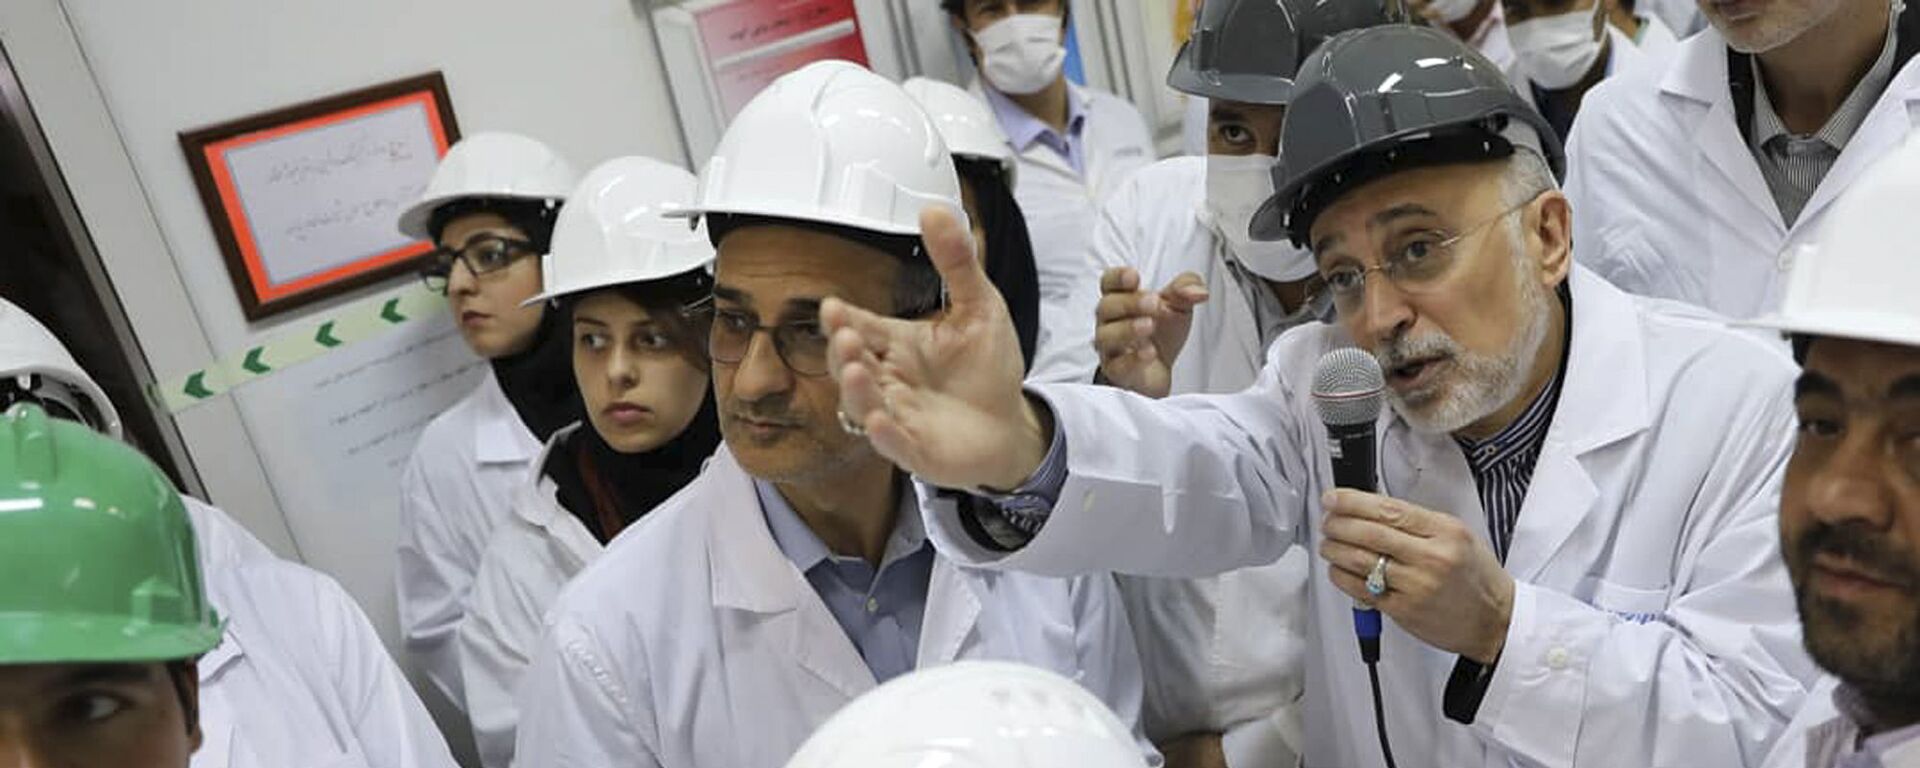 علي أكبر صالحي رئيس منظمة الطاقة النووية الإيرانية يتحدث مع وسائل الإعلام أثناء زيارته لمرفق تخصيب نطنز وسط إيران - سبوتنيك عربي, 1920, 26.04.2022